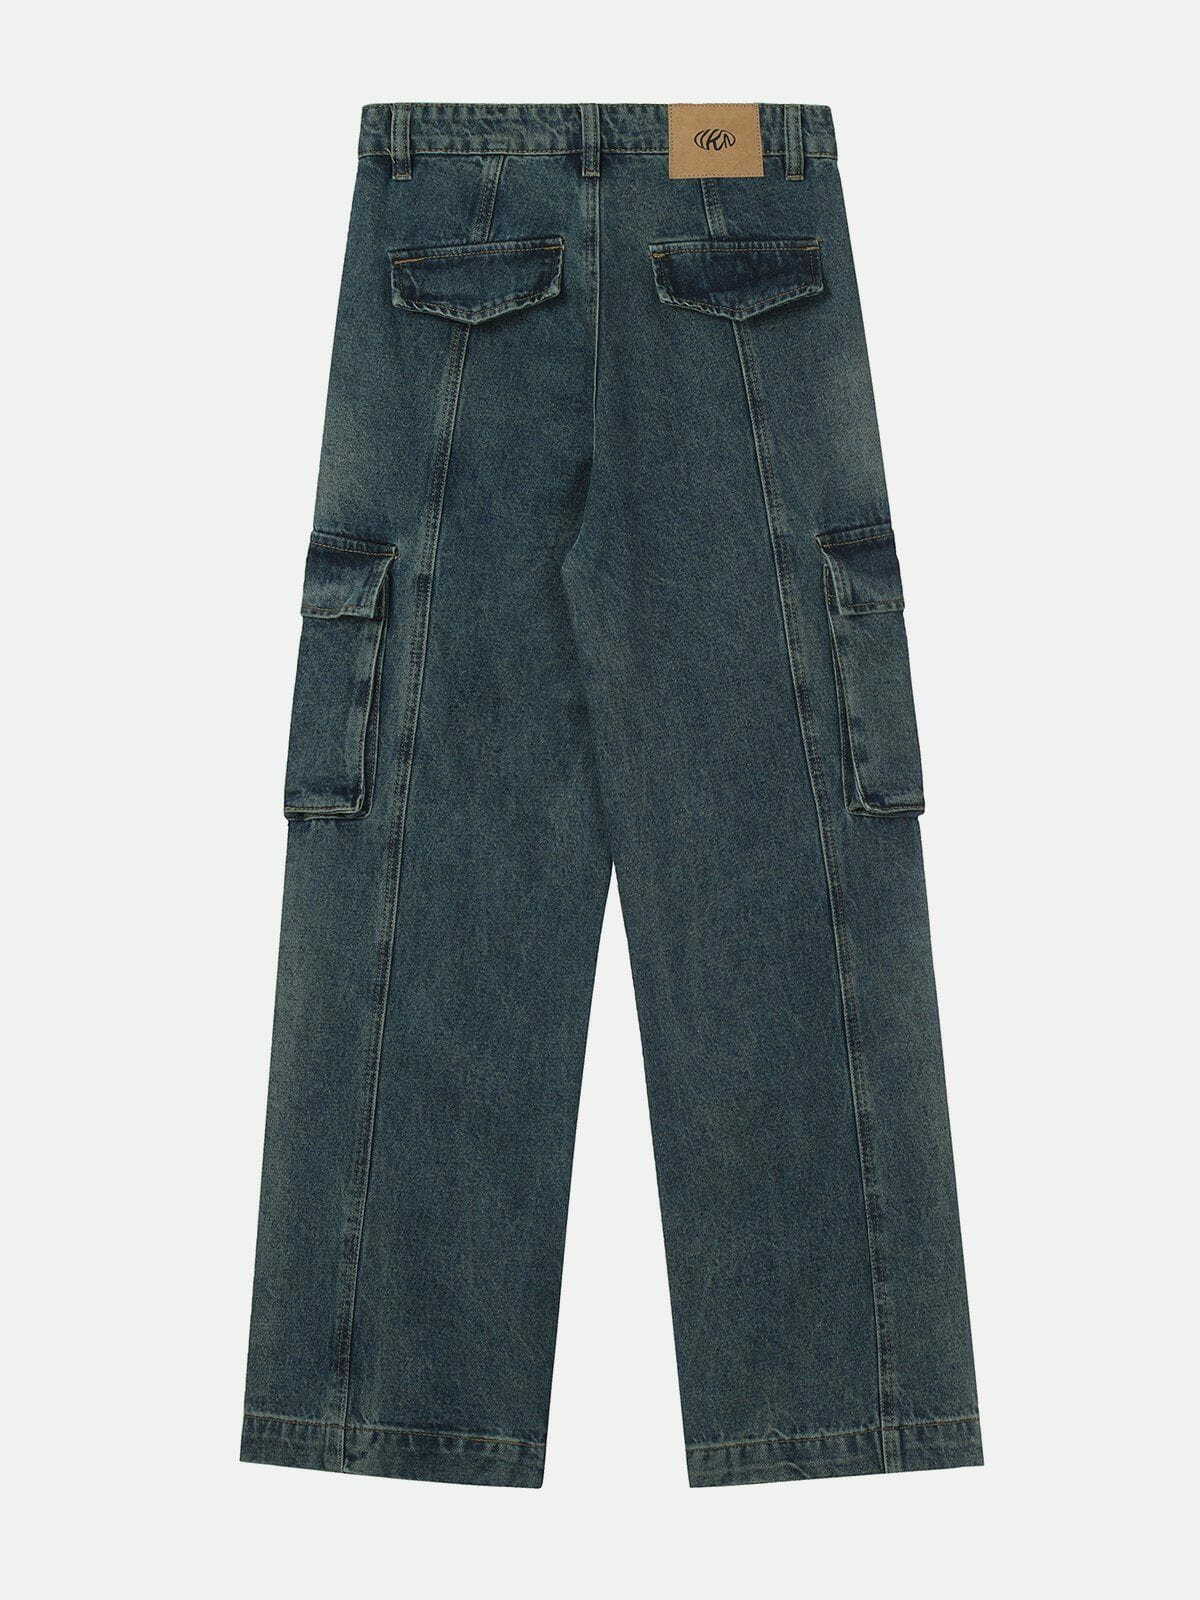 pleated pockets jeans edgy urban denim choice 7812